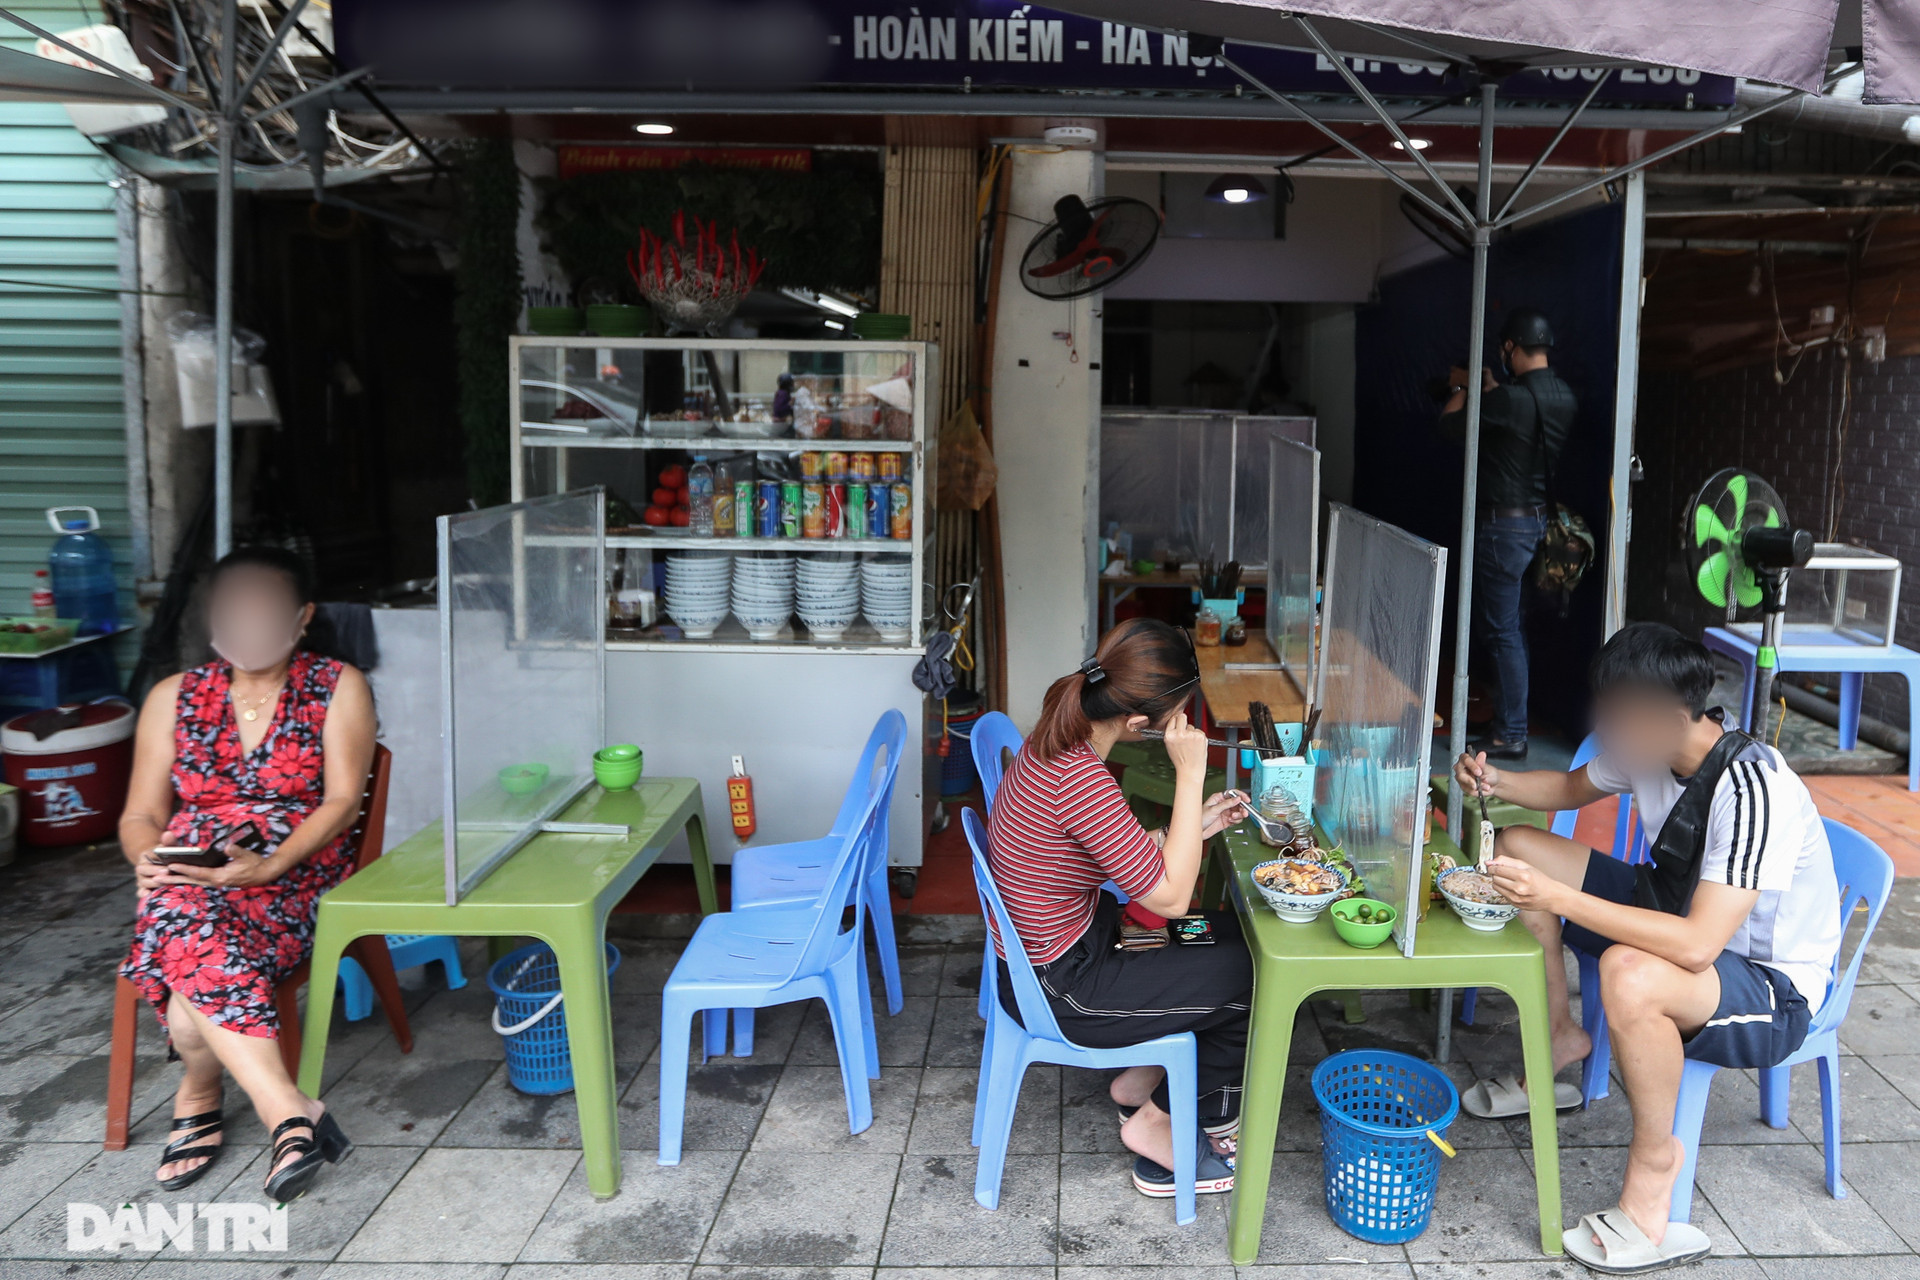 Hà Nội cho phép quận Hoàn Kiếm sử dụng hè phố kinh doanh hàng ăn uống - 1